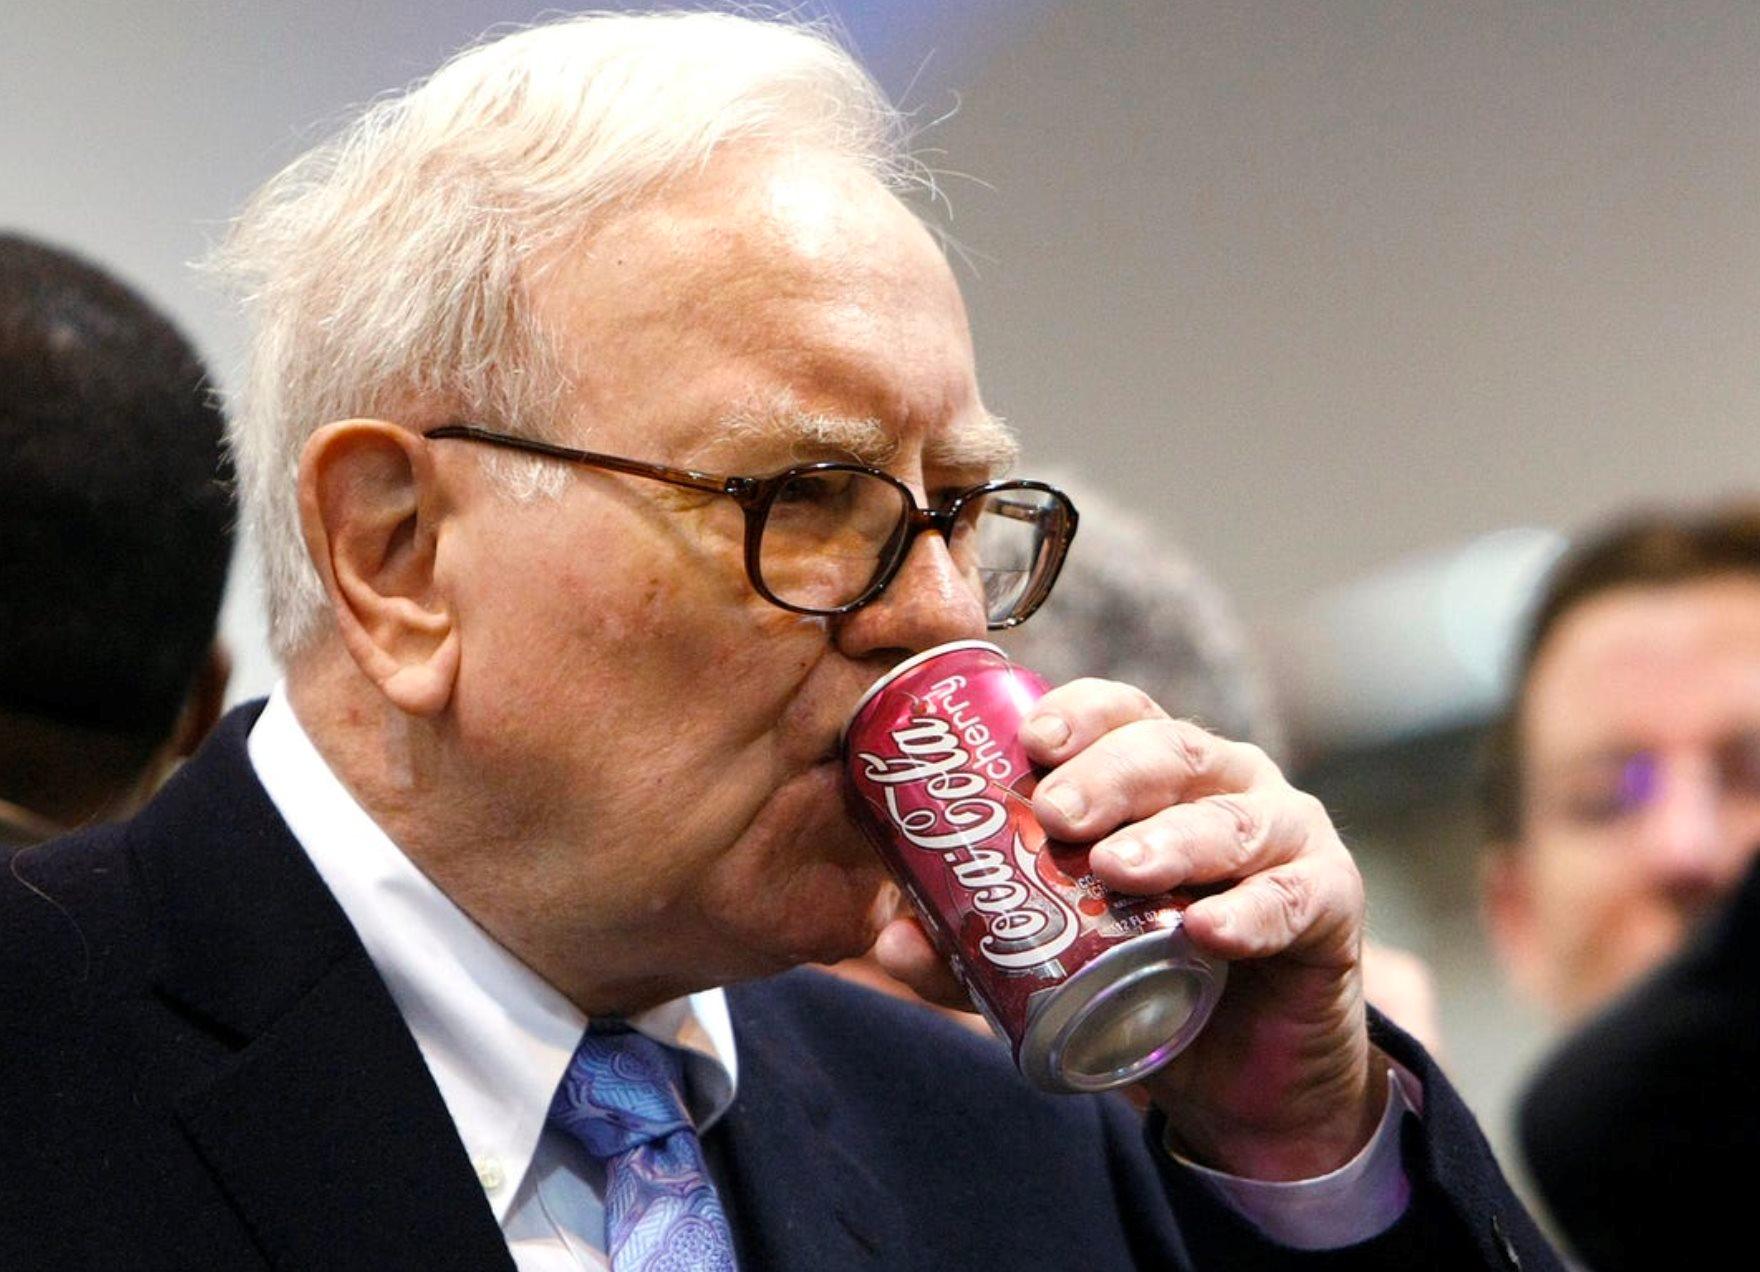 Một cổ phiếu được Warren Buffett nắm giữ suốt 35 năm: Năm nào cũng tăng cổ tức, lãi lớn đến mức vị tỷ phú không bao giờ có ý định bán - Ảnh 3.